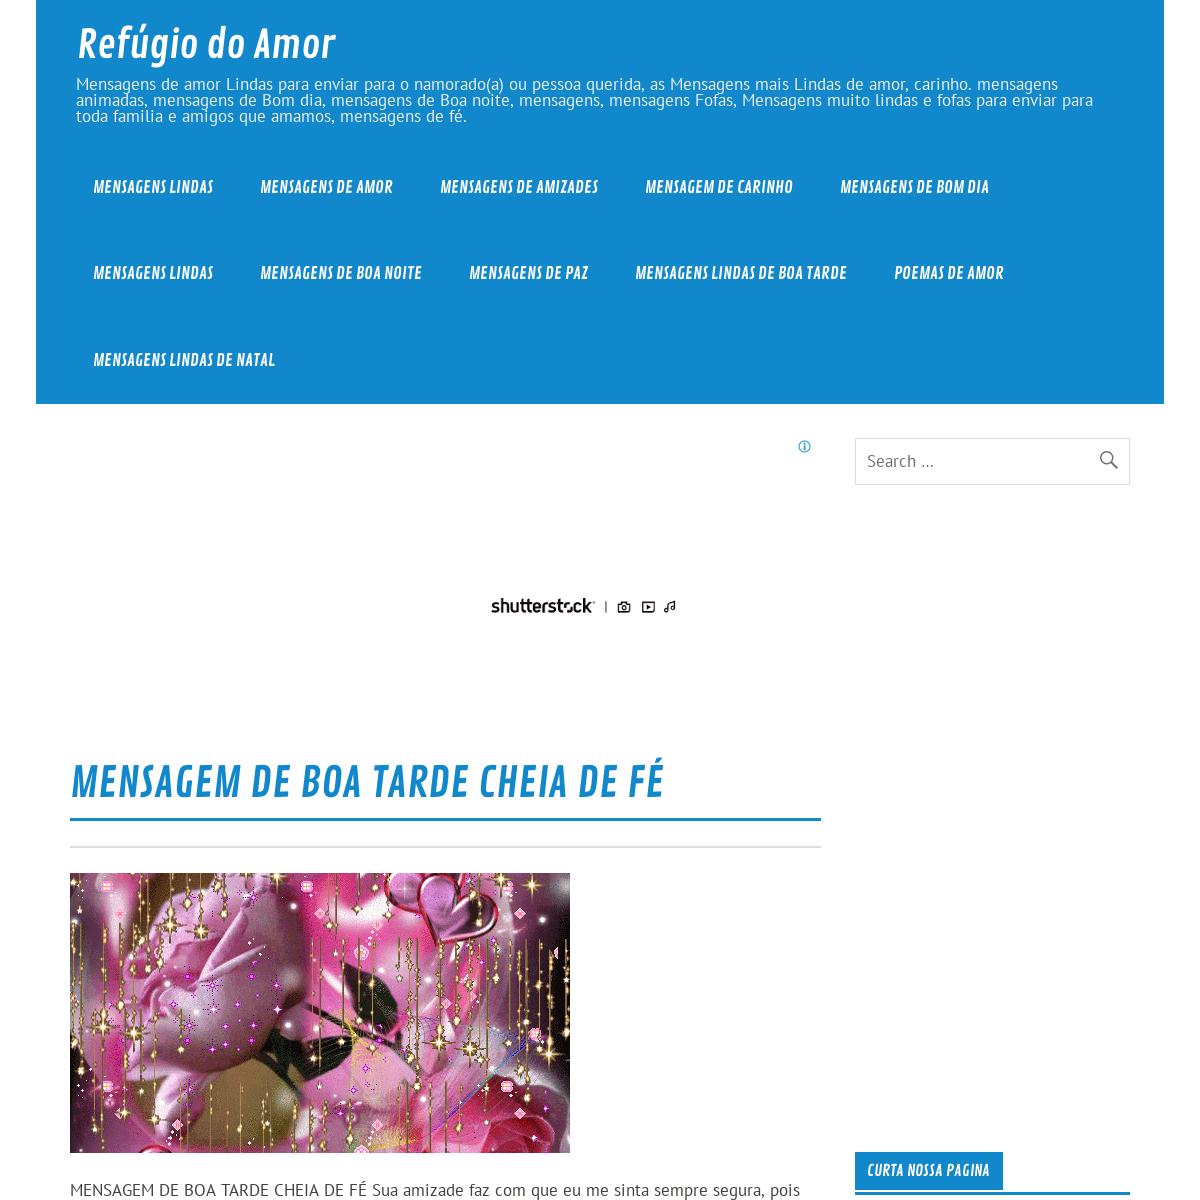 A complete backup of refugiodoamor.com.br